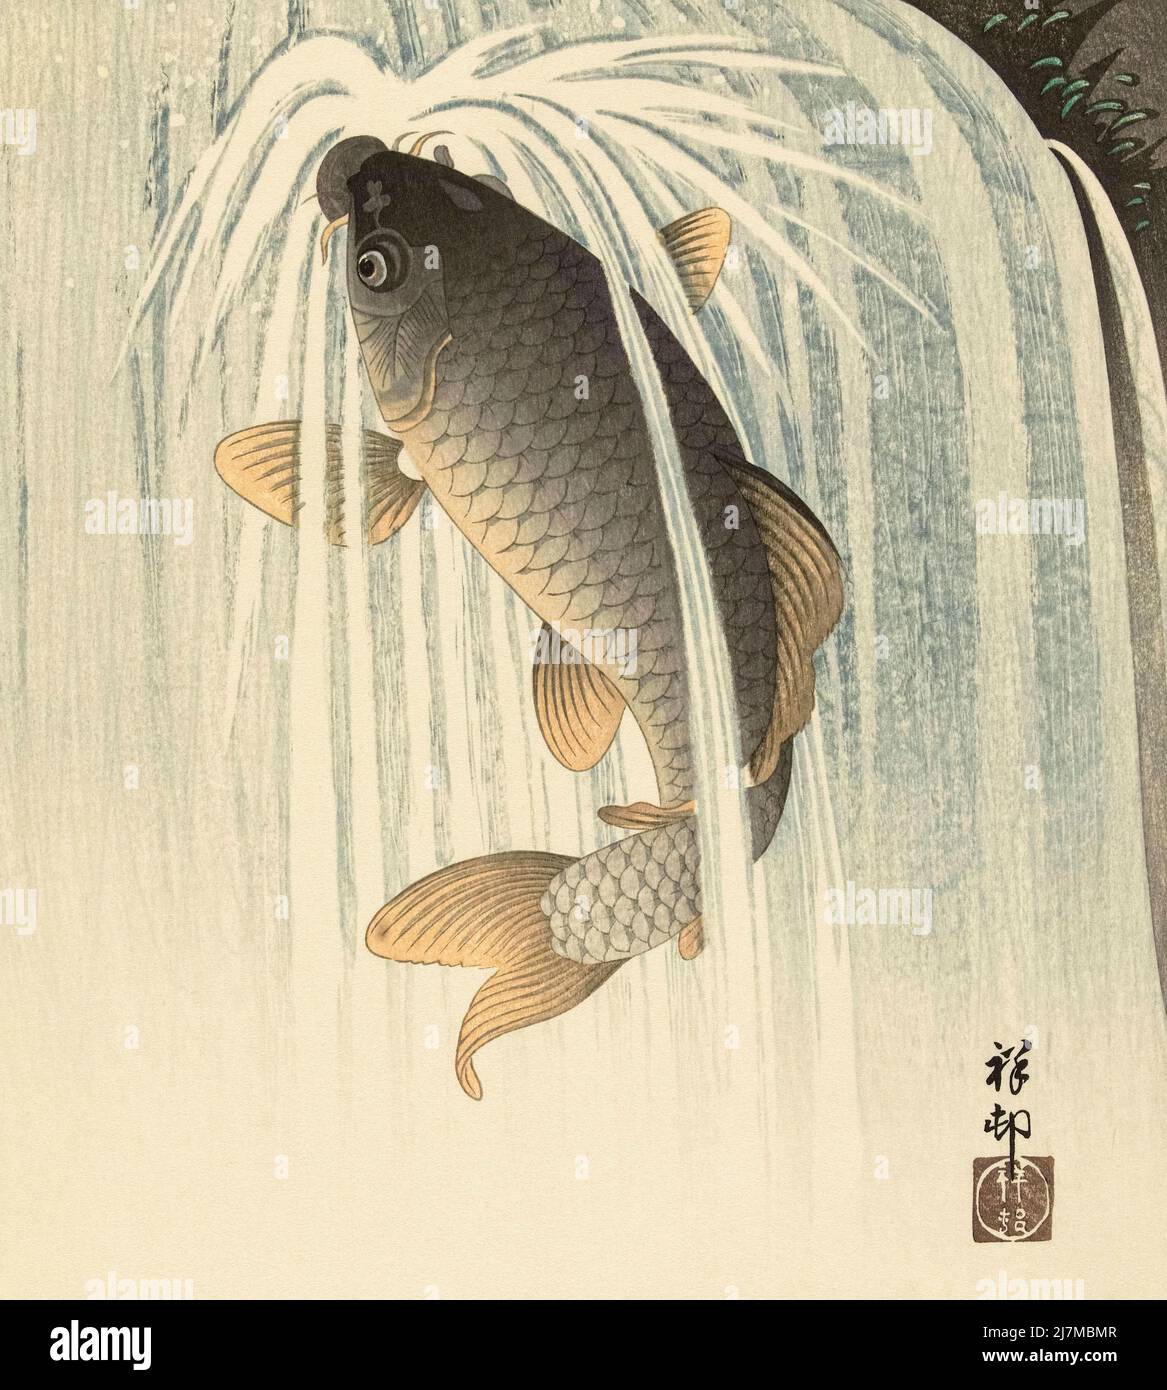 Carpe sous une chute d'eau, par l'artiste japonais Ohara Koson, 1877 - 1945. Ohara Koson faisait partie du mouvement Shin-hanga, ou de nouveaux tirages. Banque D'Images